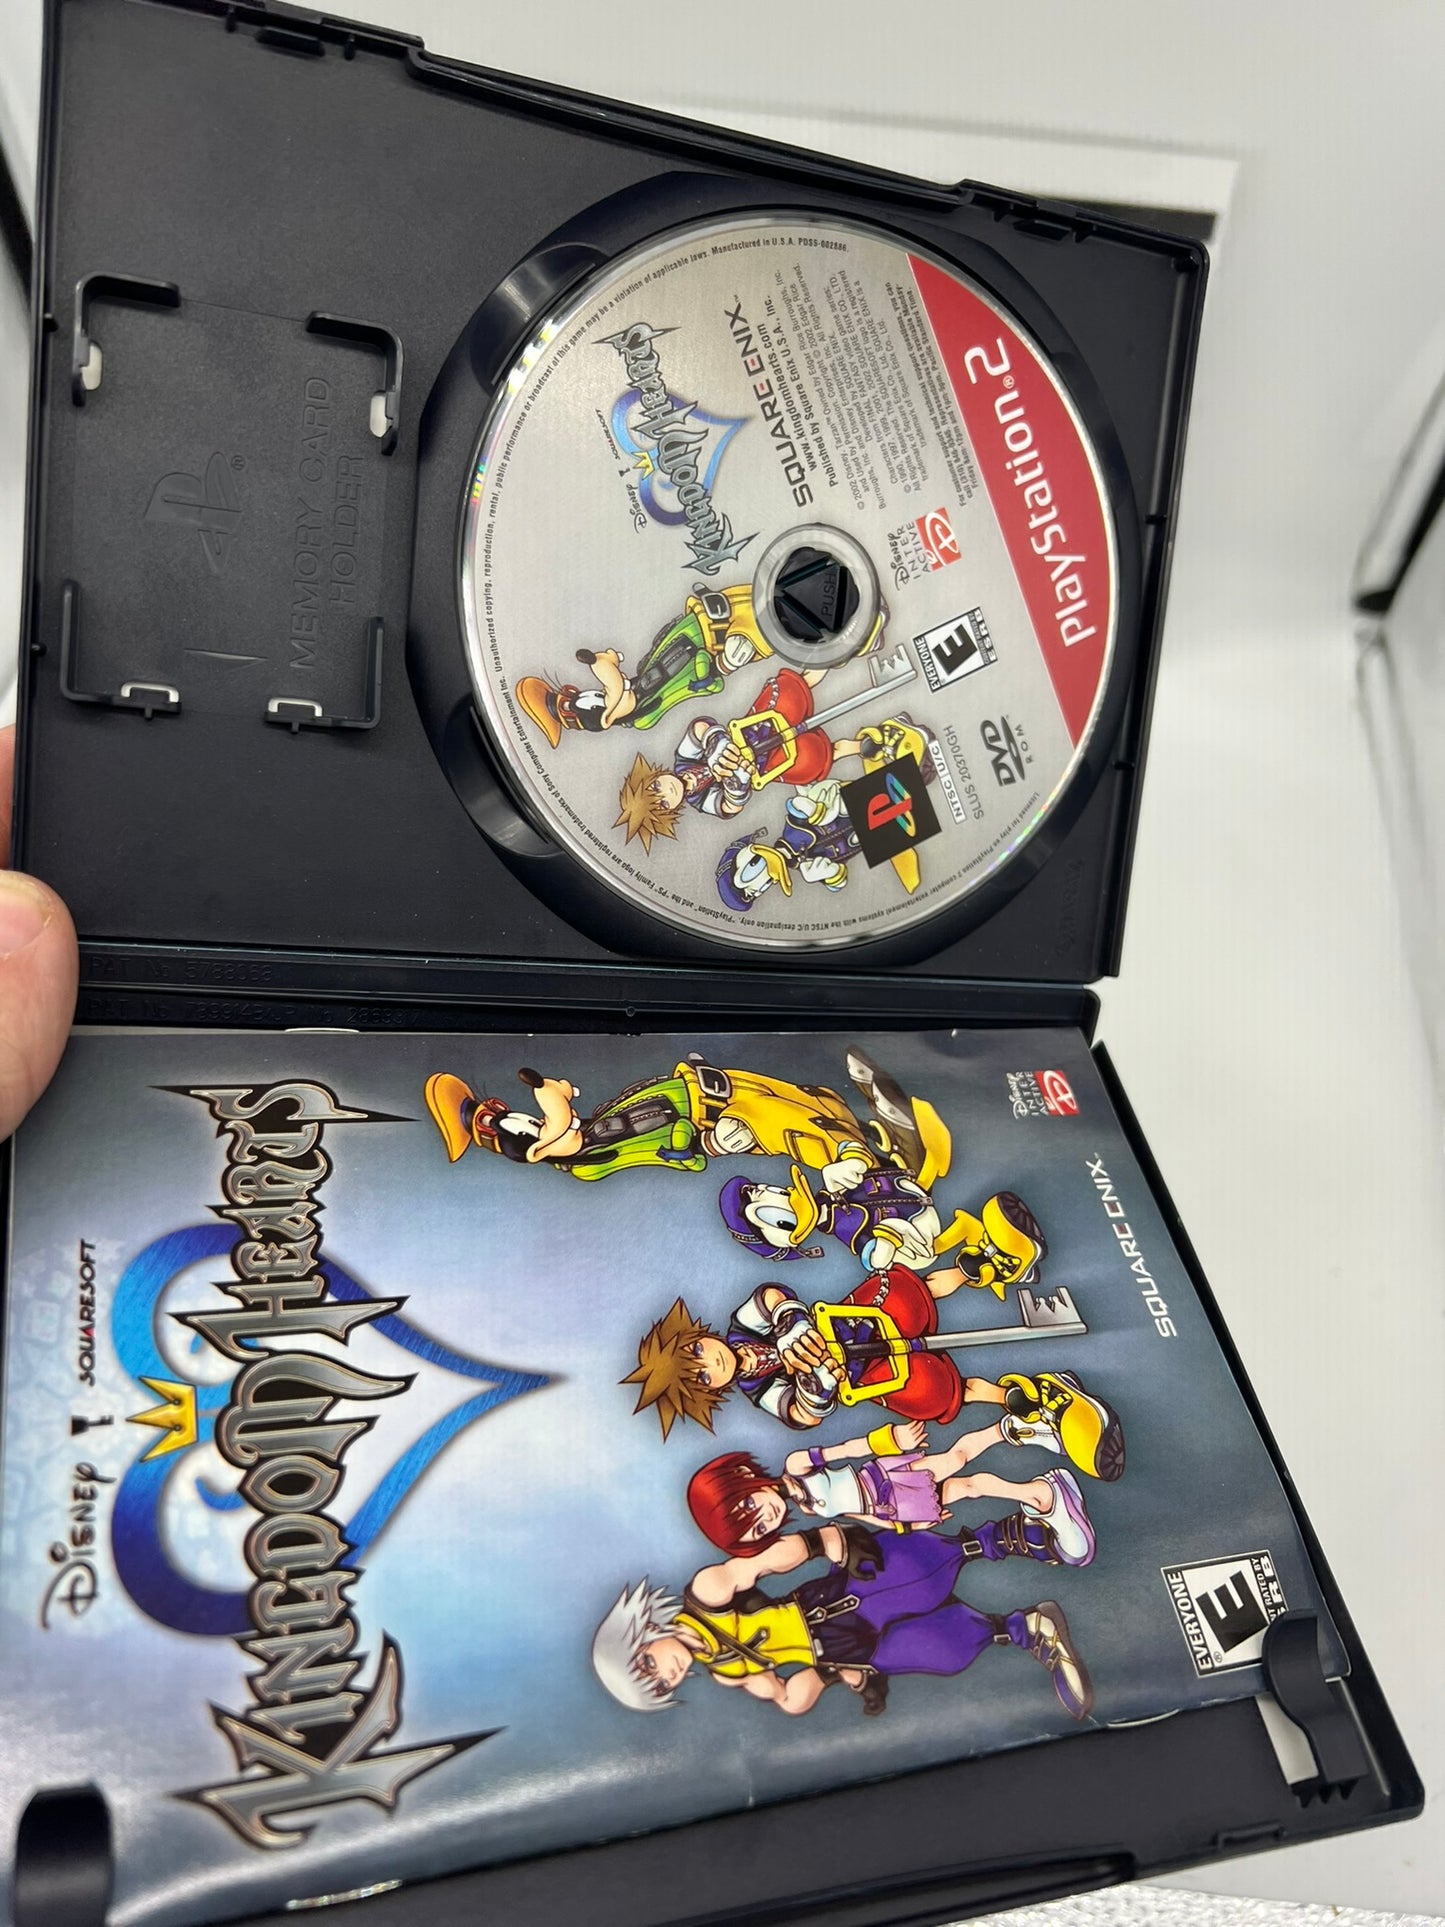 Kingdom Hearts Greatest Hits - PS2 - Disney - 2002